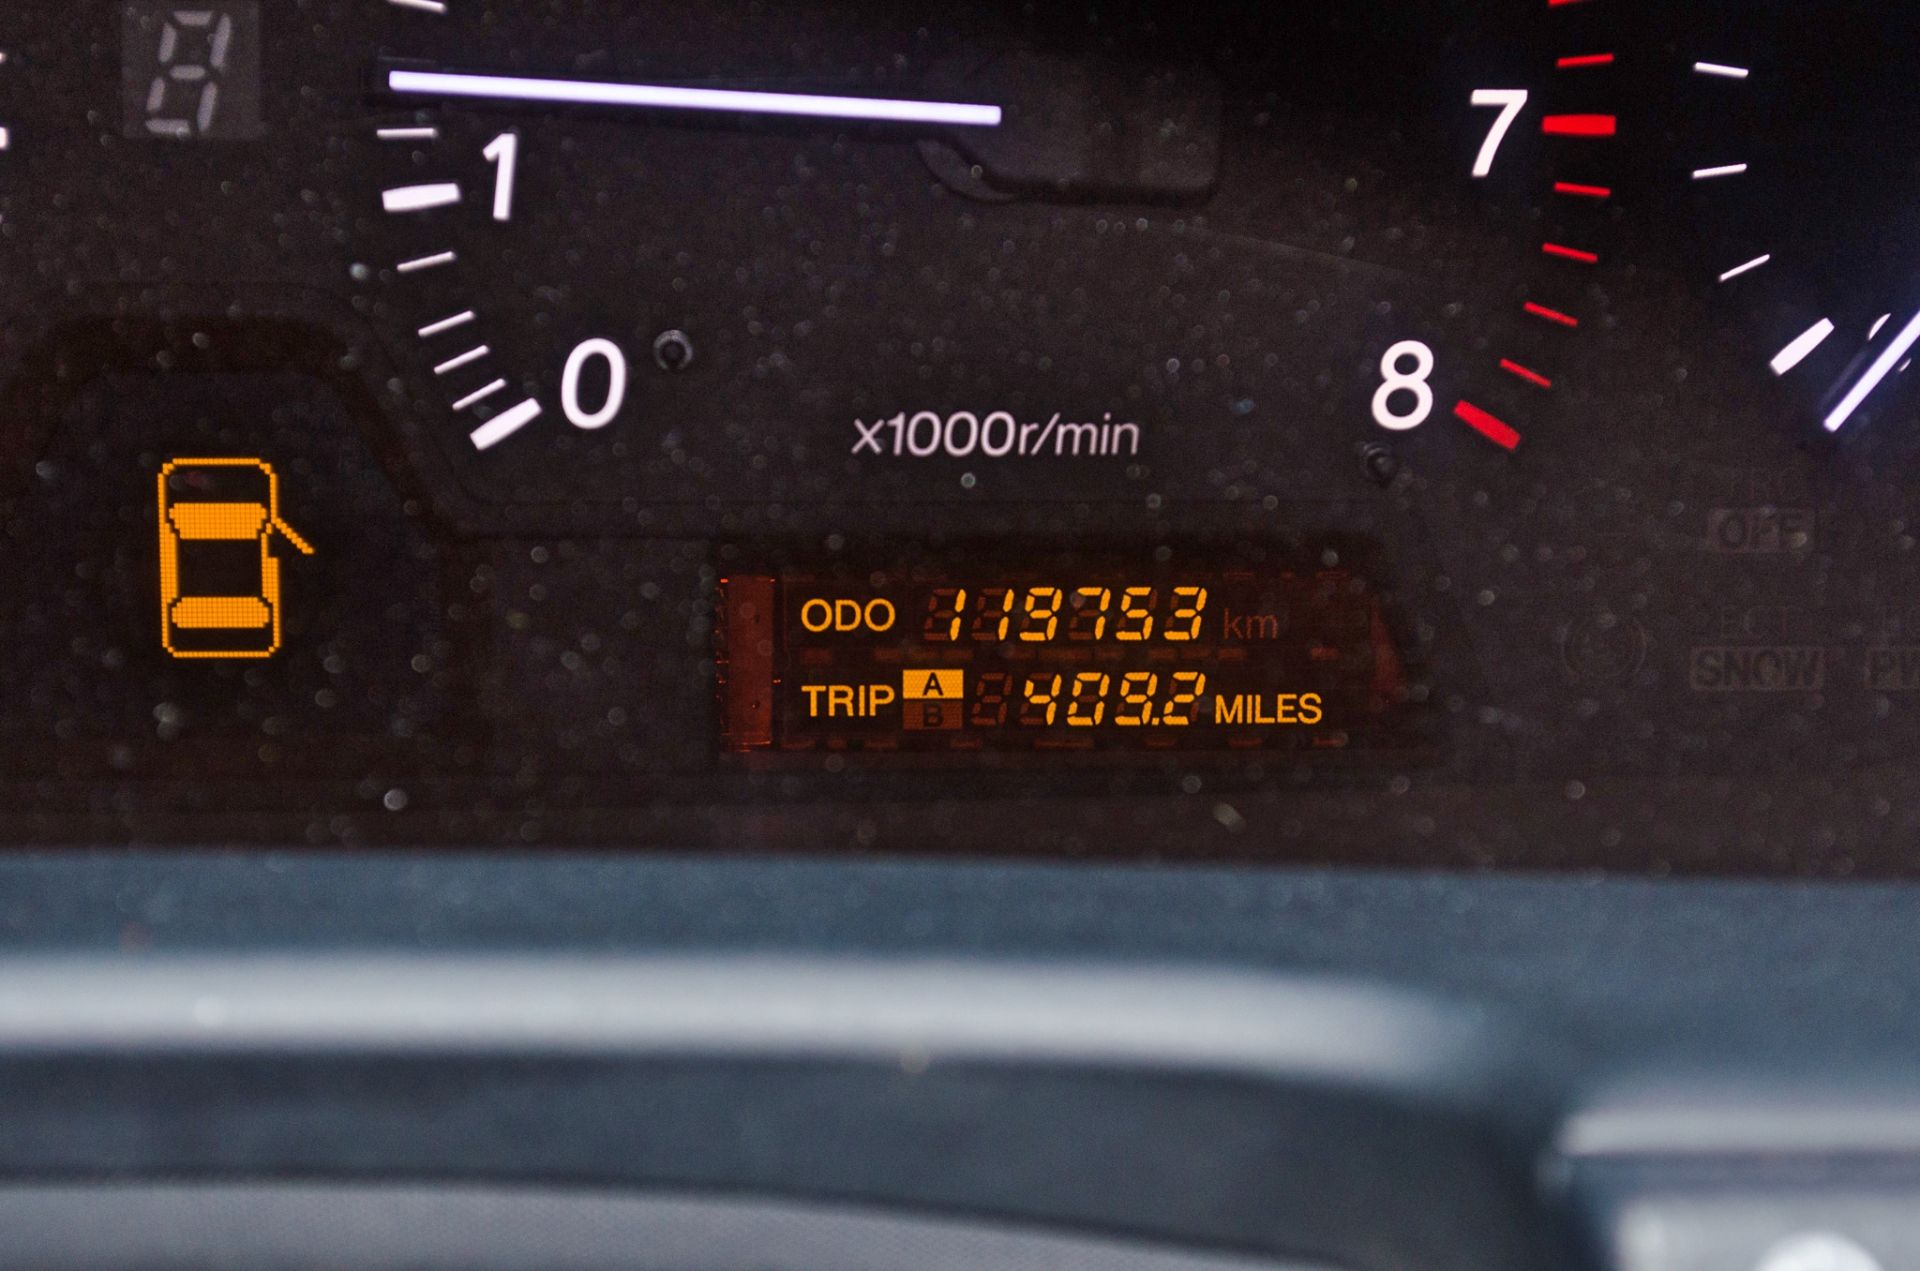 2004 Lexus LS 430 4.3 litre V8 4 door saloon car - Image 47 of 54